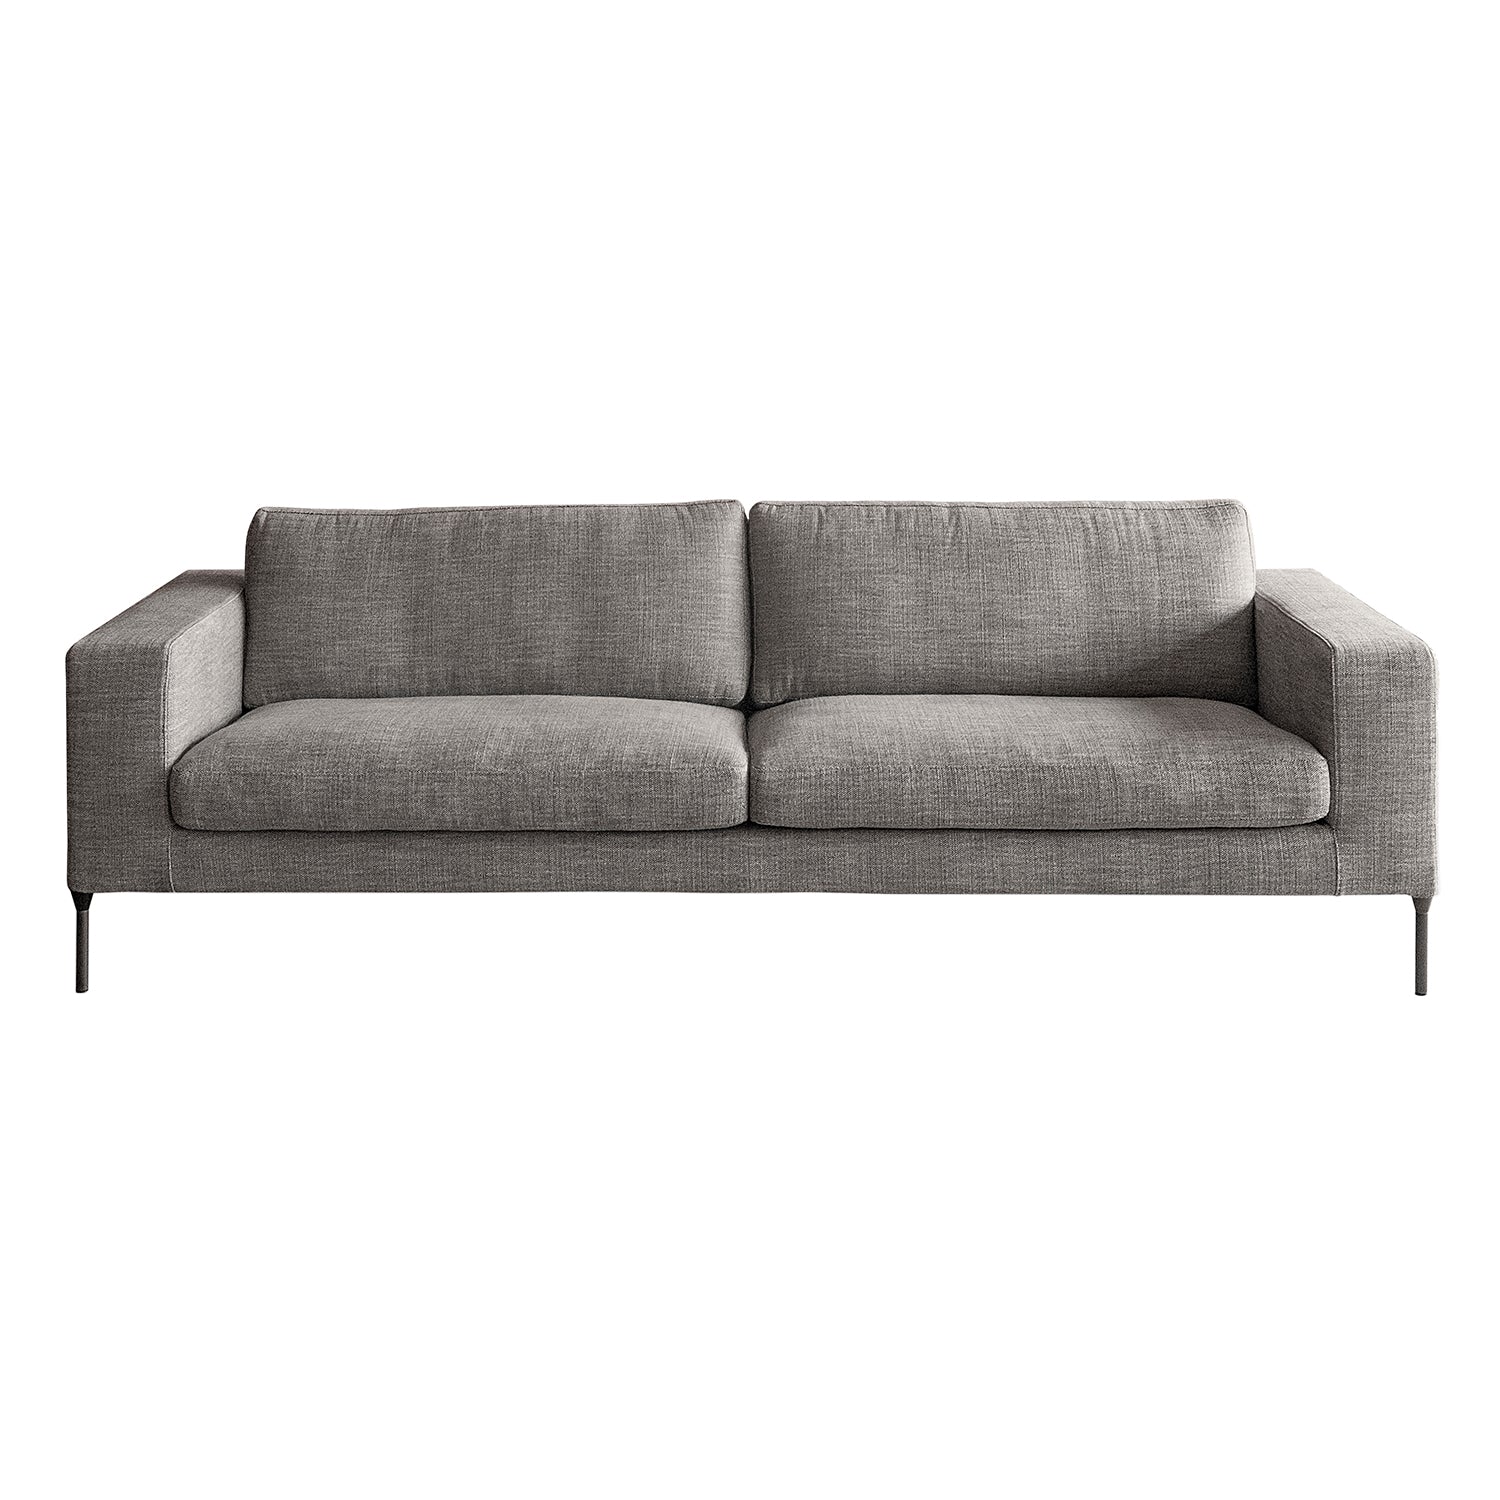 Neo 2 Seater Sofa: Sofa - Bronzato